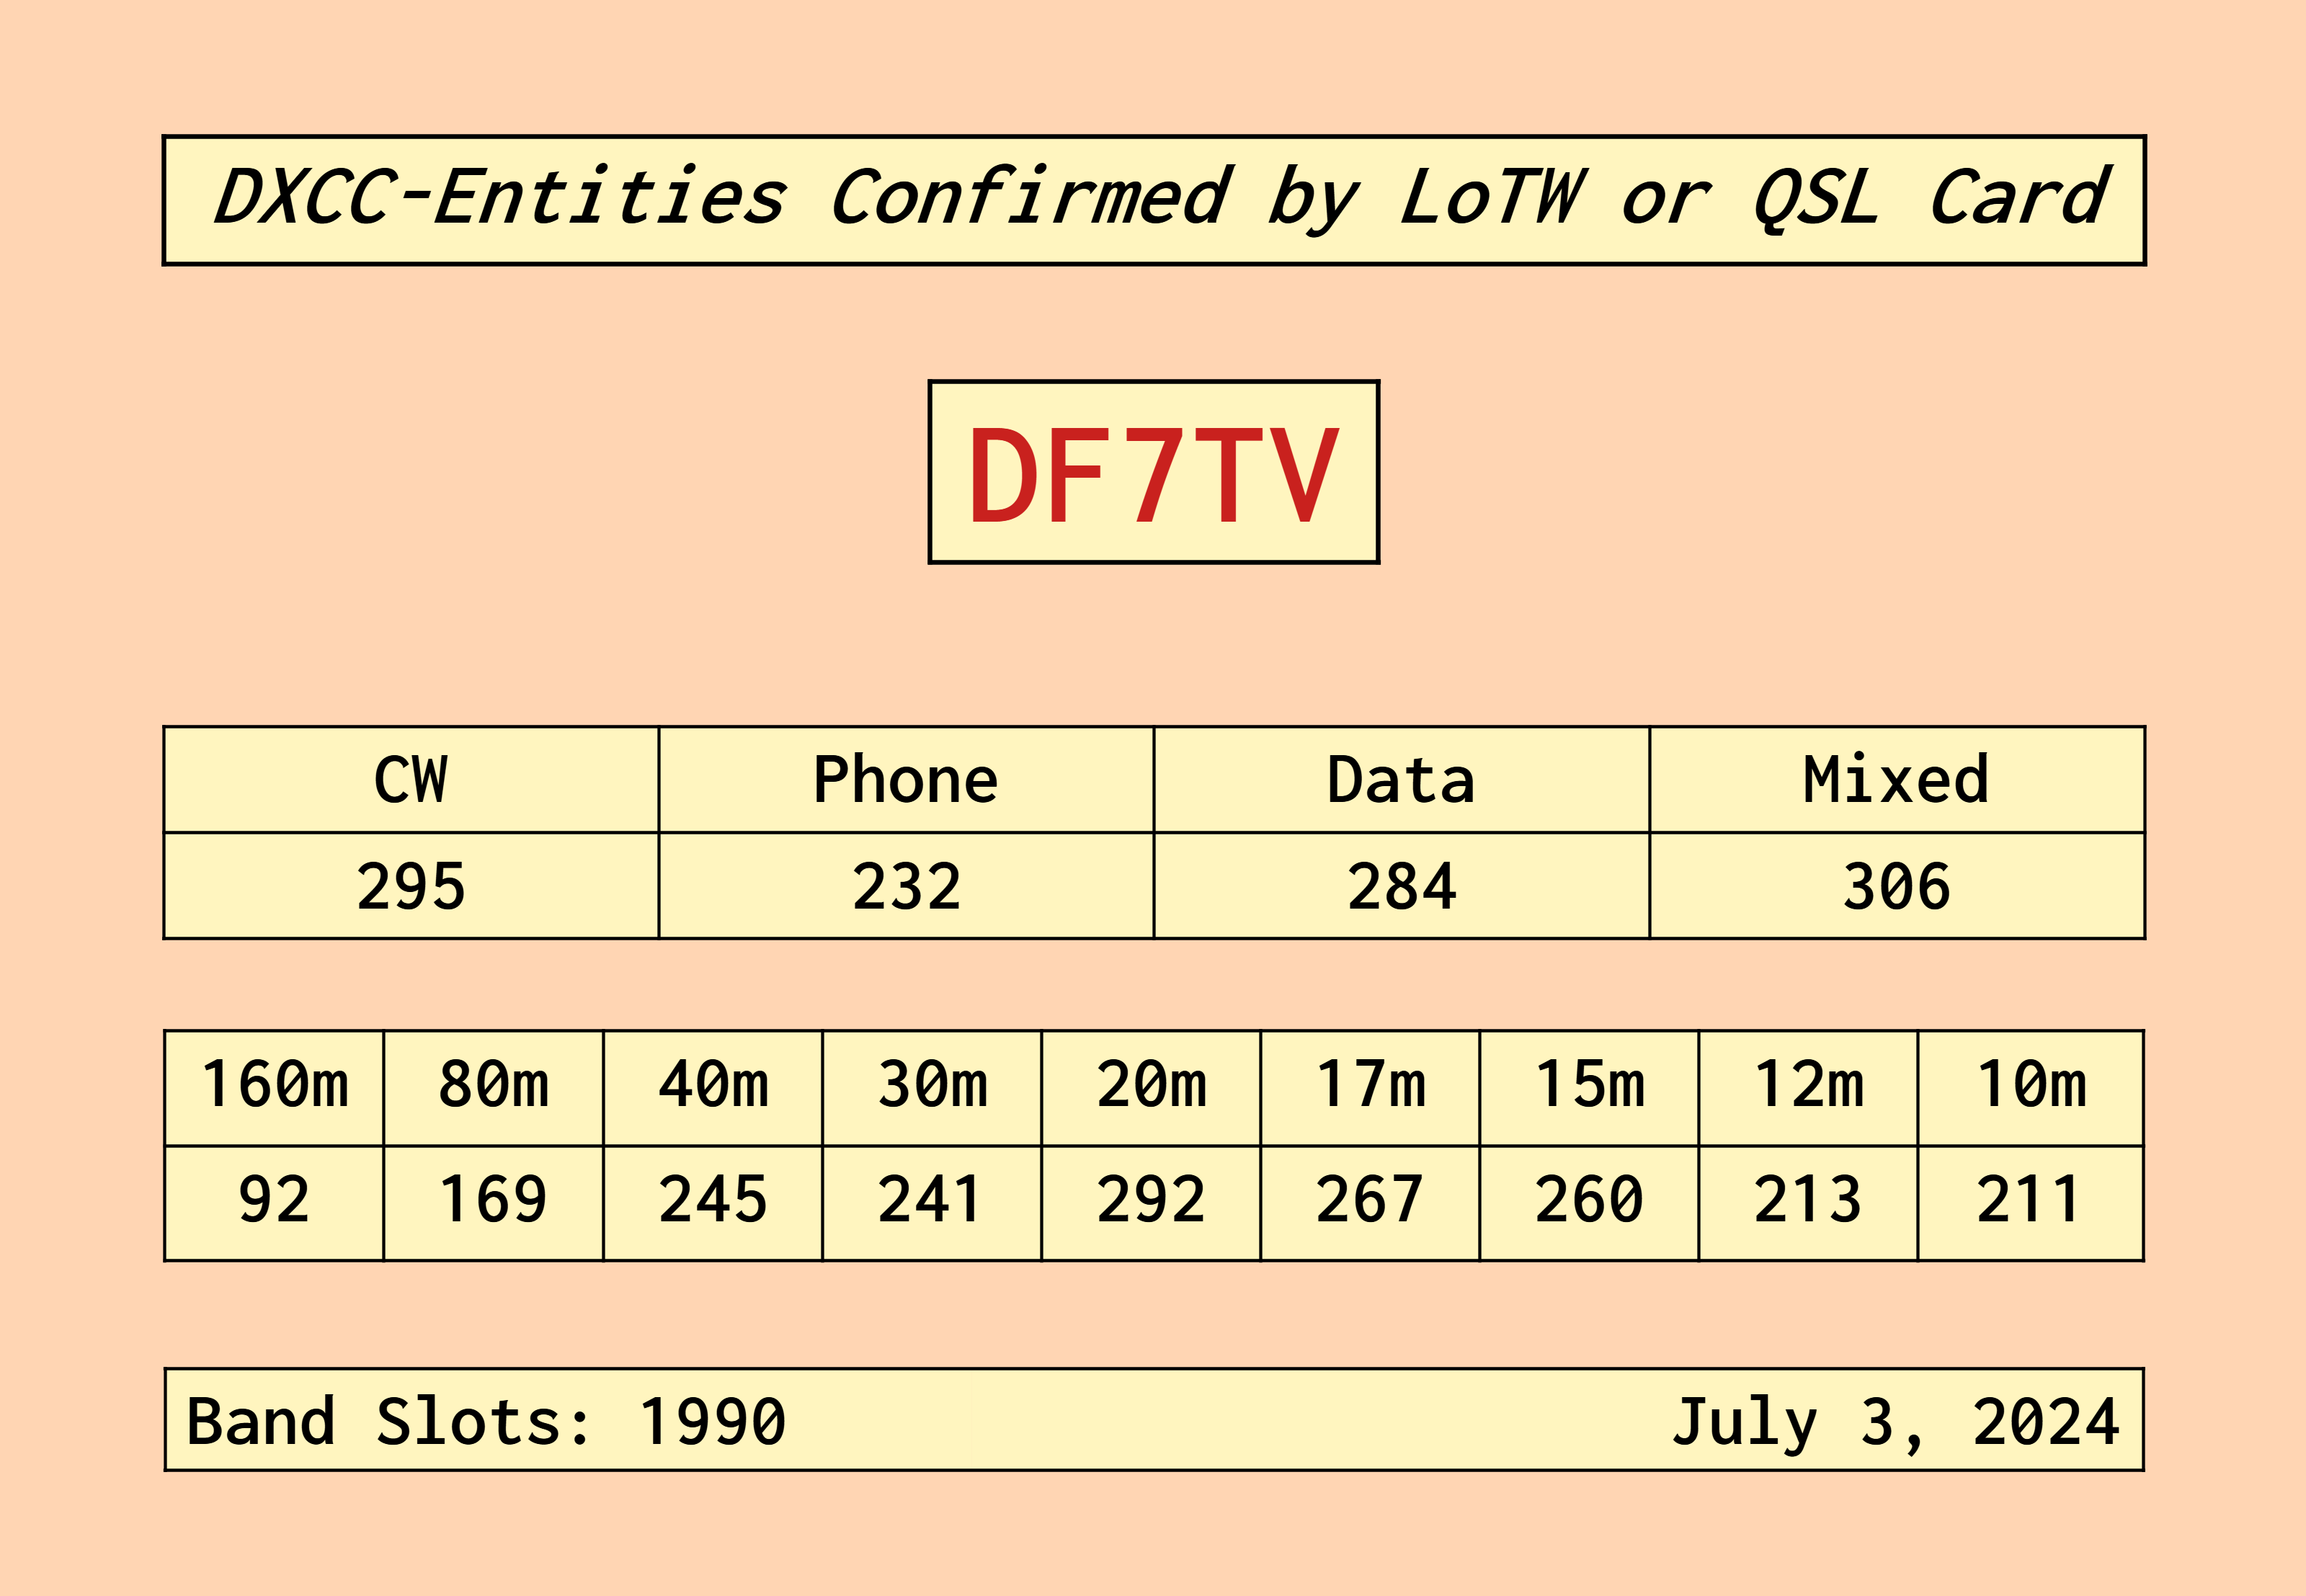 DF7TV-DXCC-ENTITIES-CONFIRMED